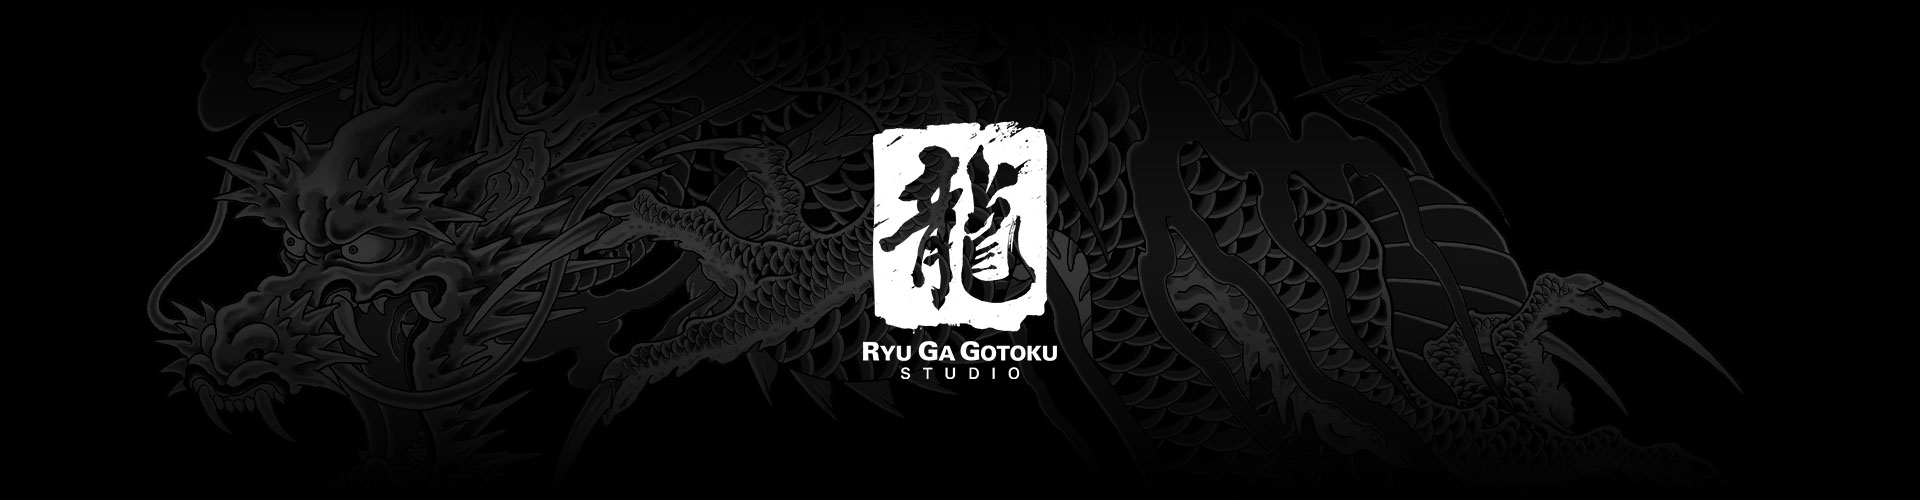 Gri ejderha dövmesi arka planı ile Ryu Ga Gotoku Studio logosu.